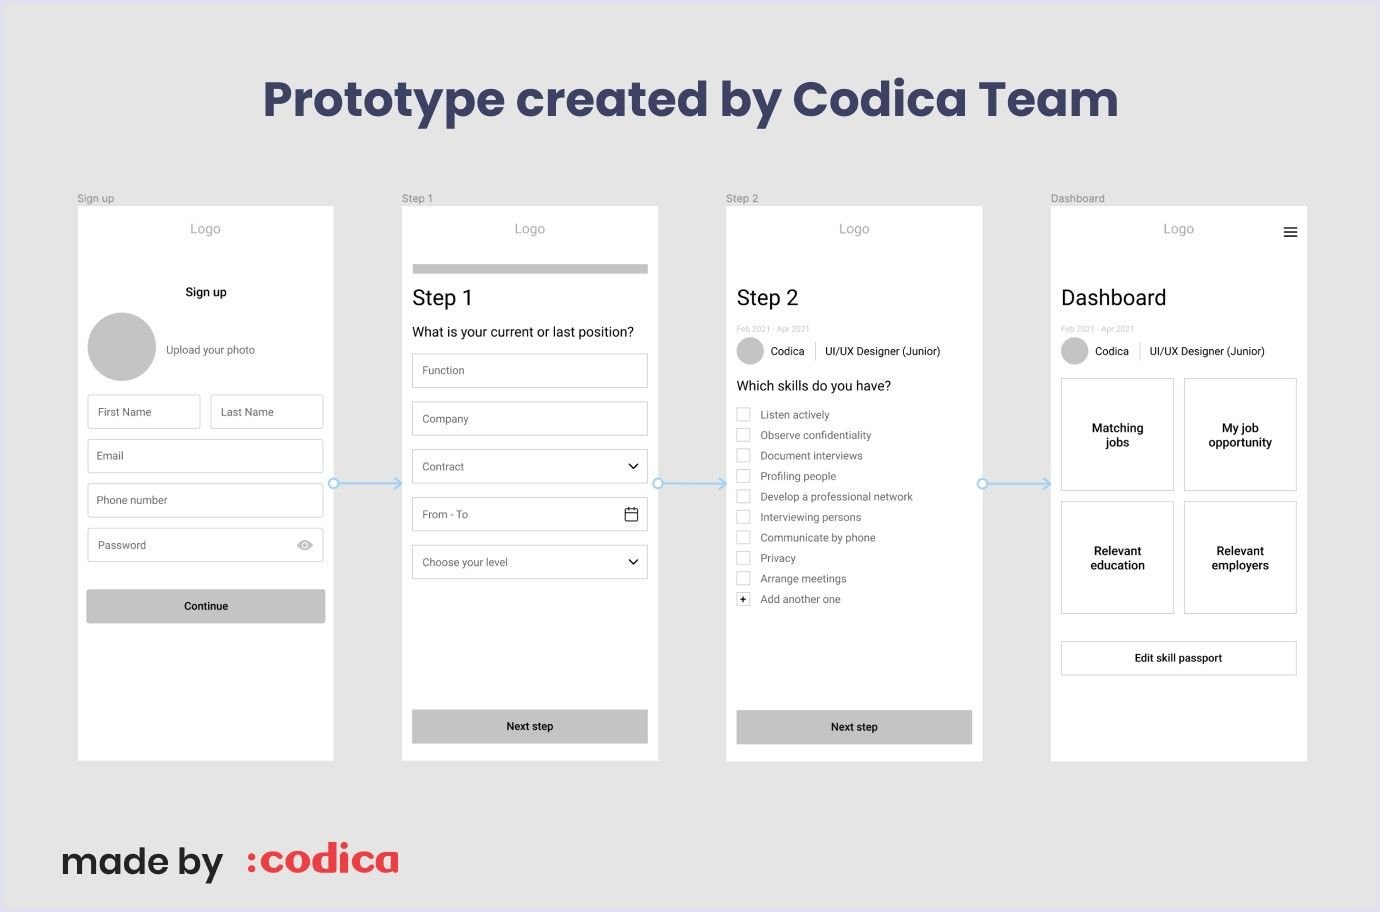 Codica’s groundbreaking prototype